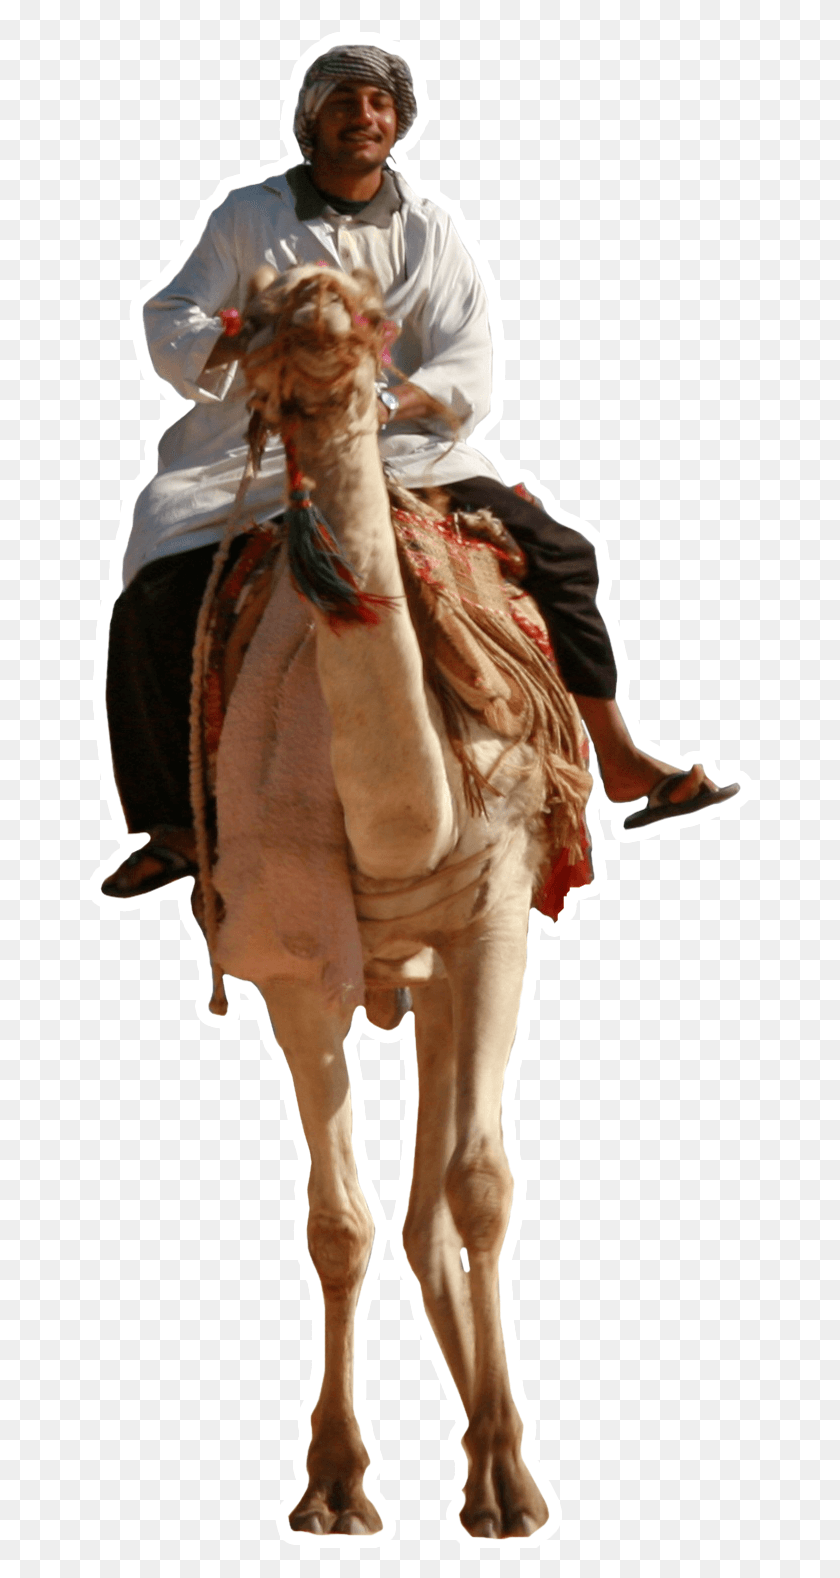 668x1518 Marruecos Desierto Tours Tripadvisor Comentarios Hombre En Camello, Persona, Humano, Caballo Hd Png